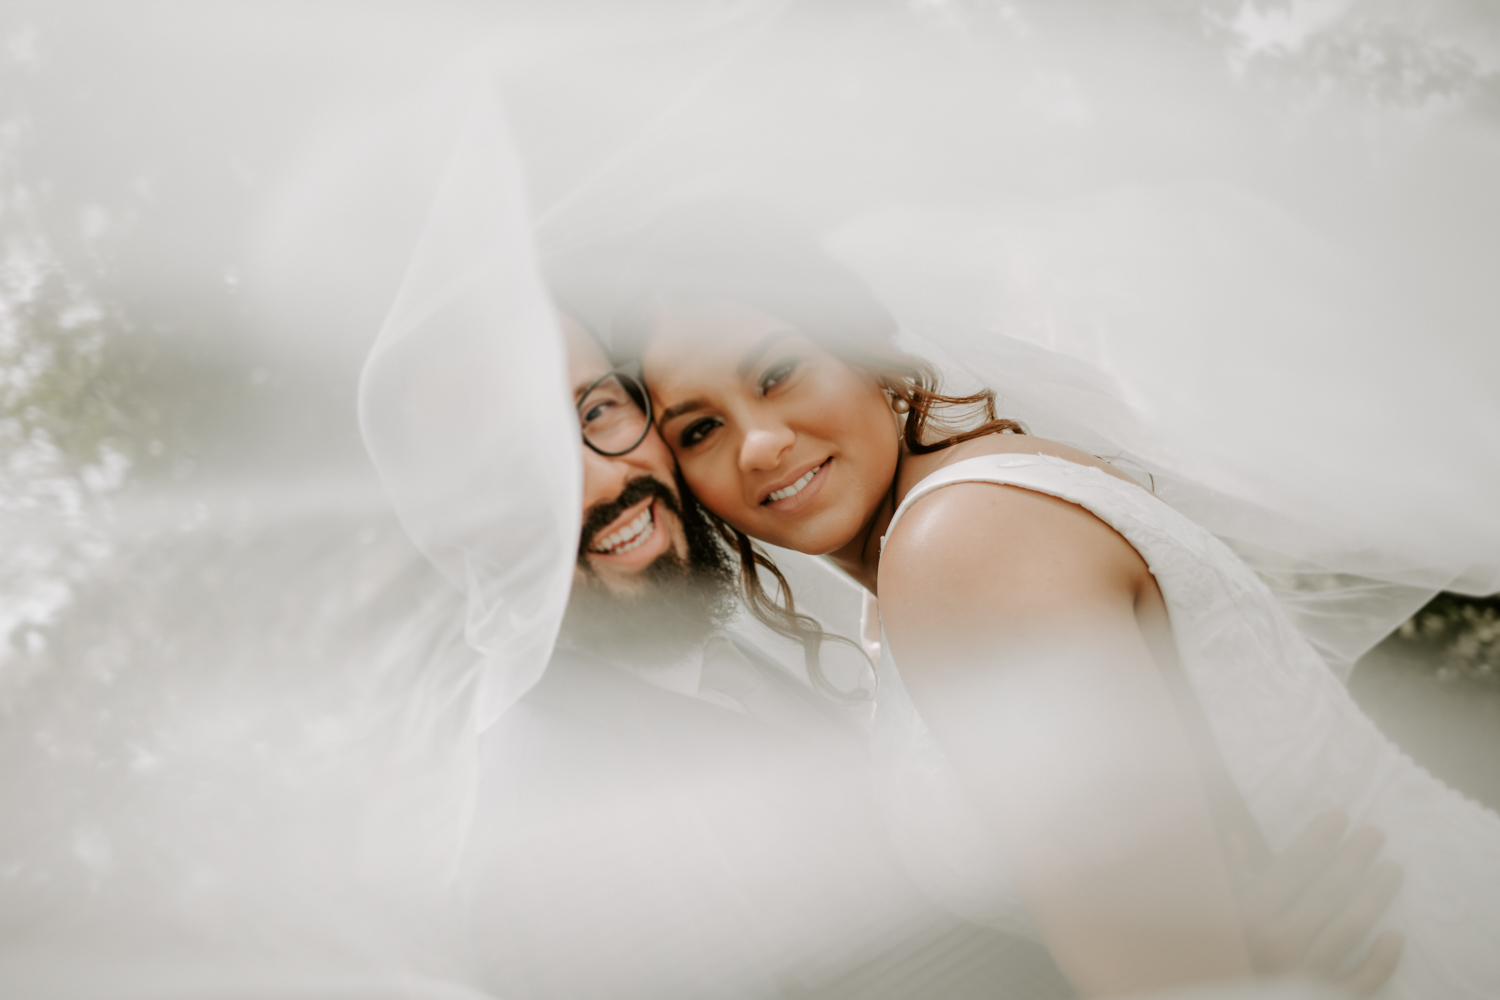 Raphaela & Heitor| Casamento no campo com decoração verde e branco